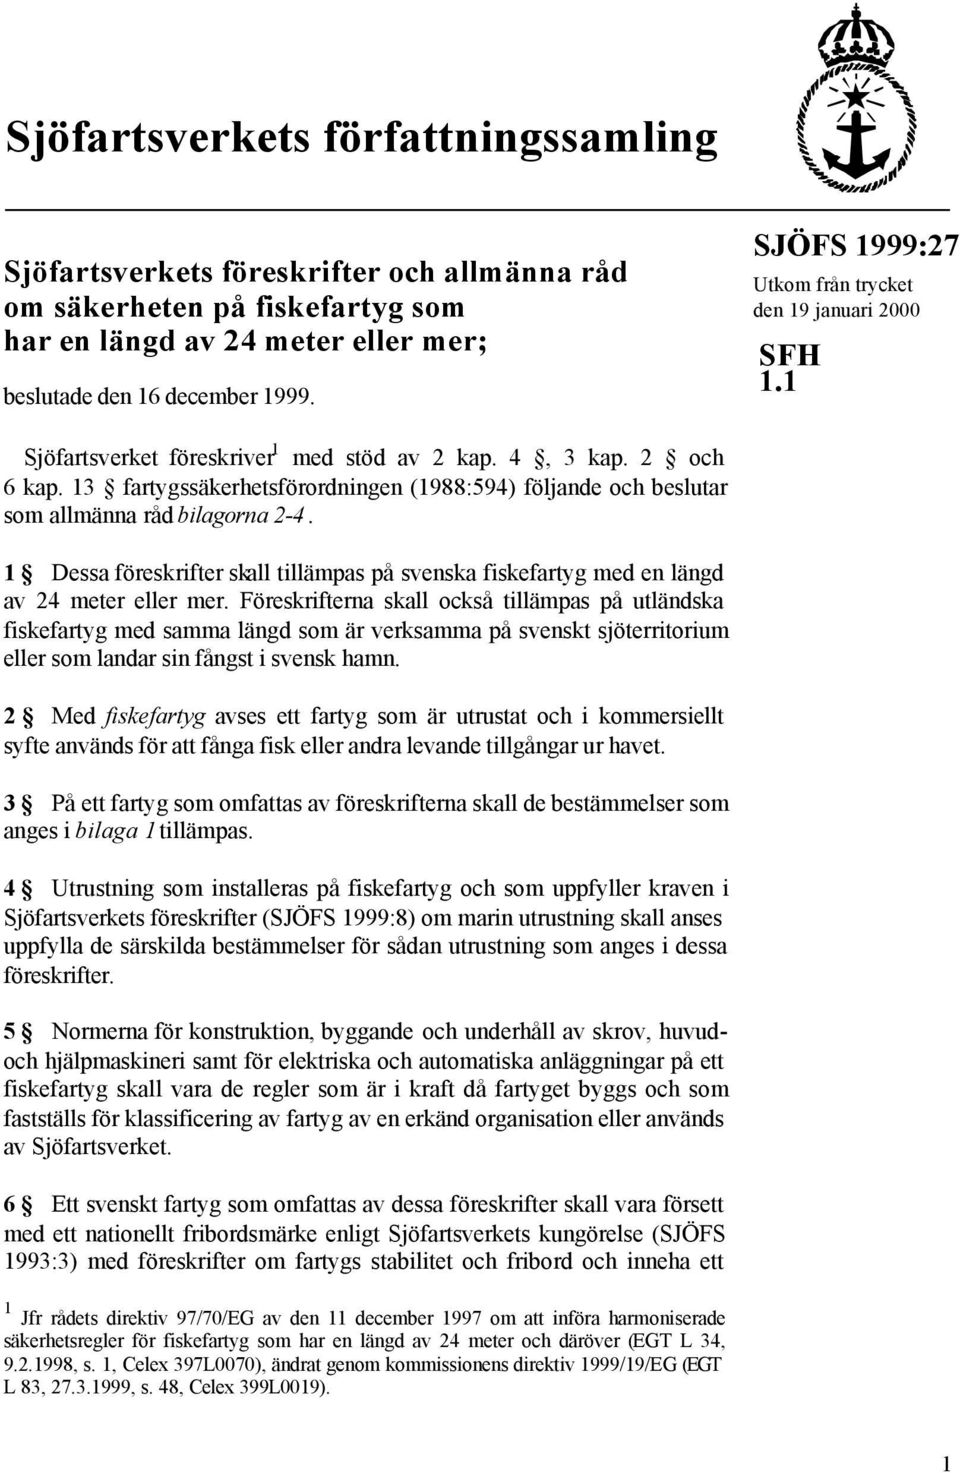 13 fartygssäkerhetsförordningen (1988:594) följande och beslutar som allmänna råd bilagorna 2-4. 1 Dessa föreskrifter skall tillämpas på svenska fiskefartyg med en längd av 24 meter eller mer.